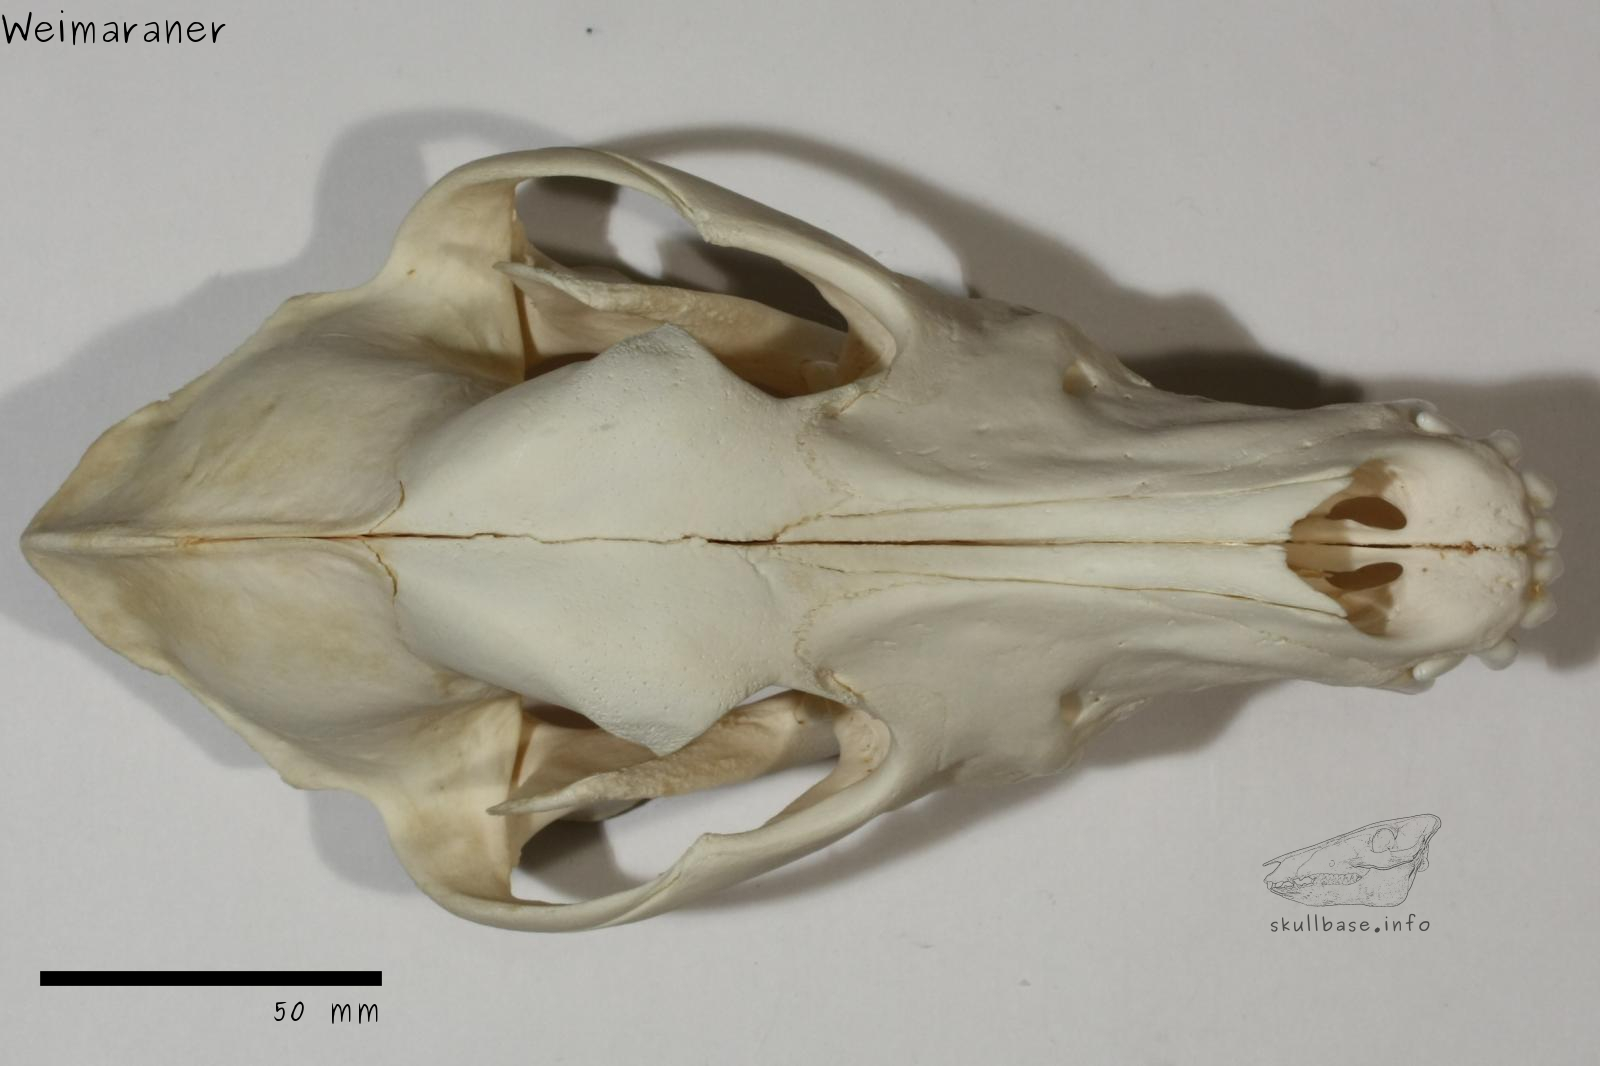 Weimaraner (Canis lupus familiaris) skull dorsal view